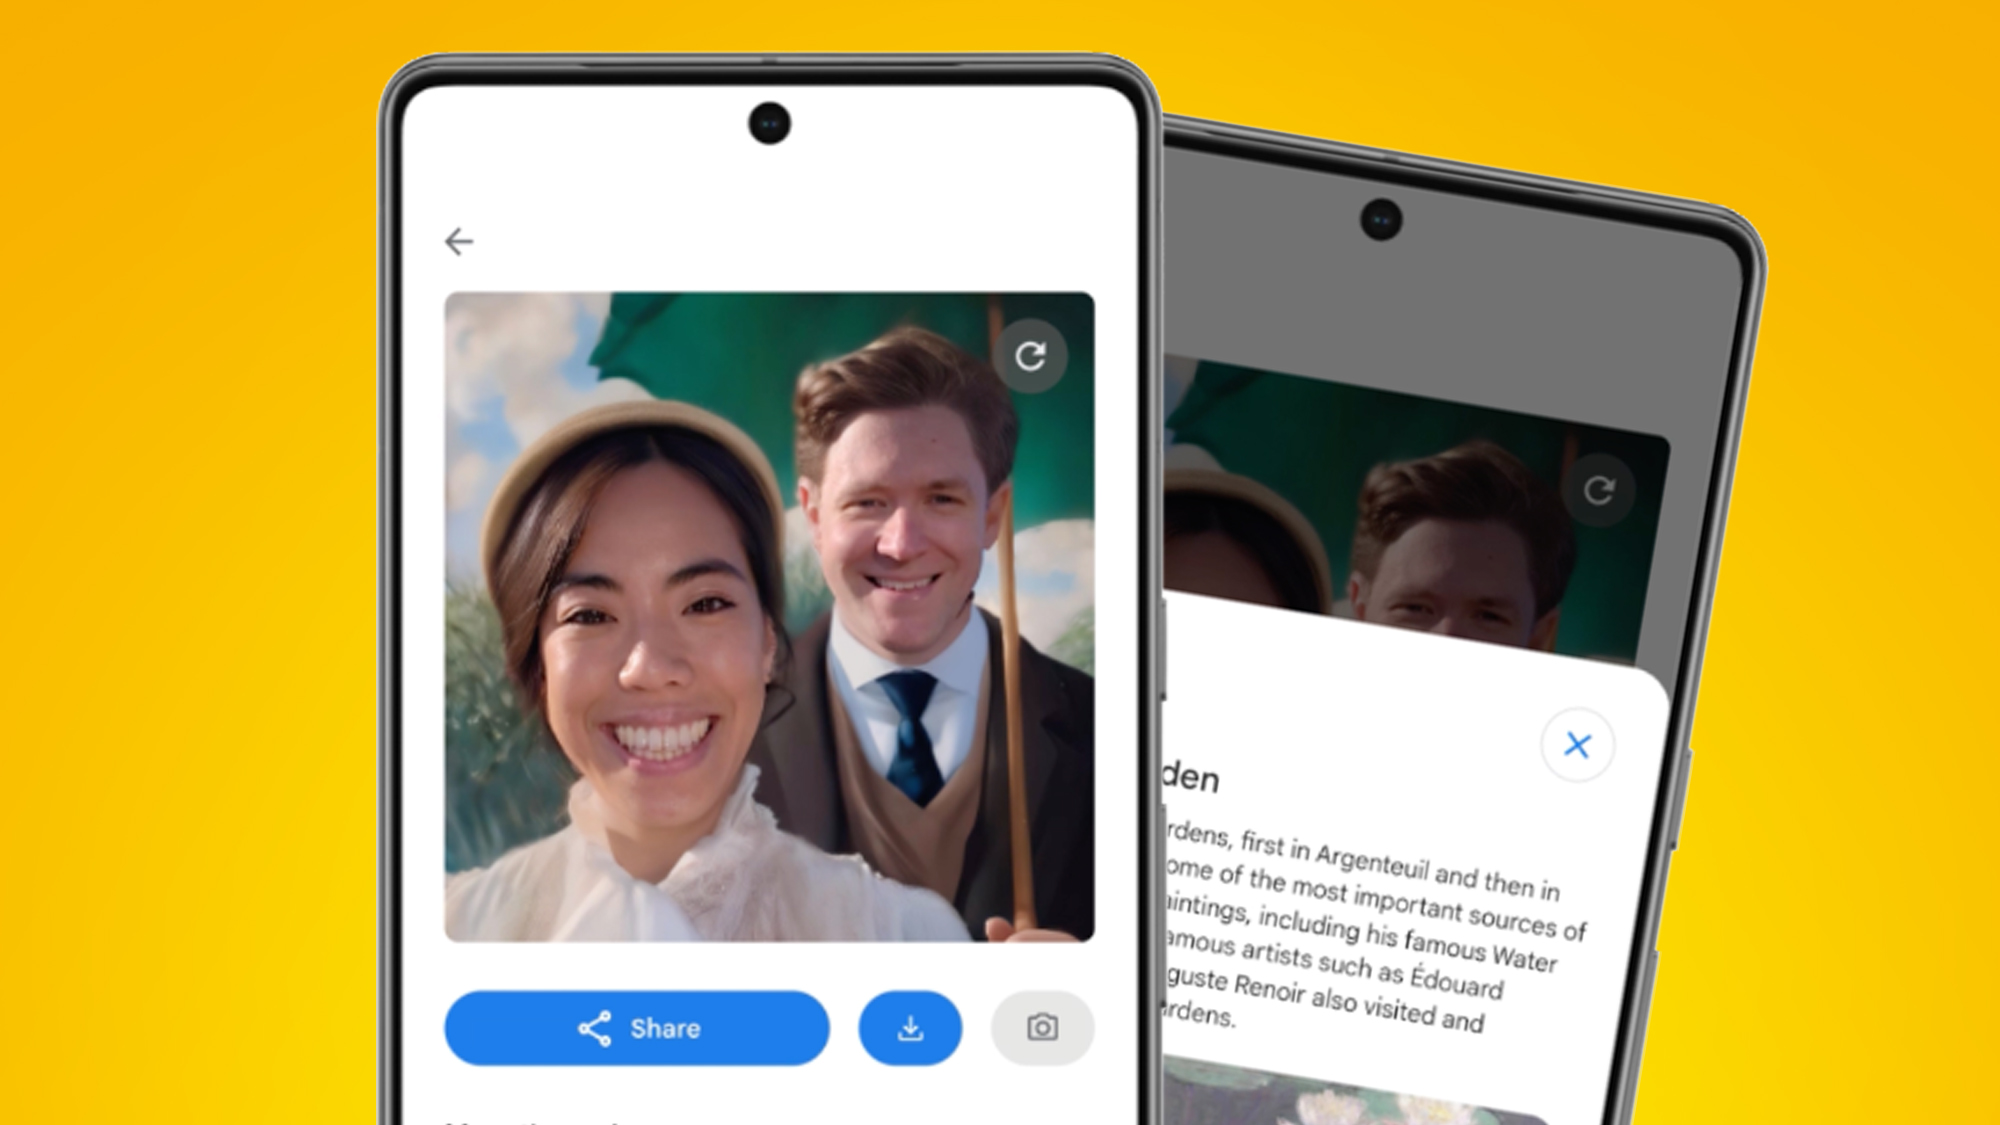 Google’s Art Selfie 2 از هوش مصنوعی برای انتقال شما به زمان دیگری استفاده می کند – در اینجا نحوه استفاده از آن آورده شده است